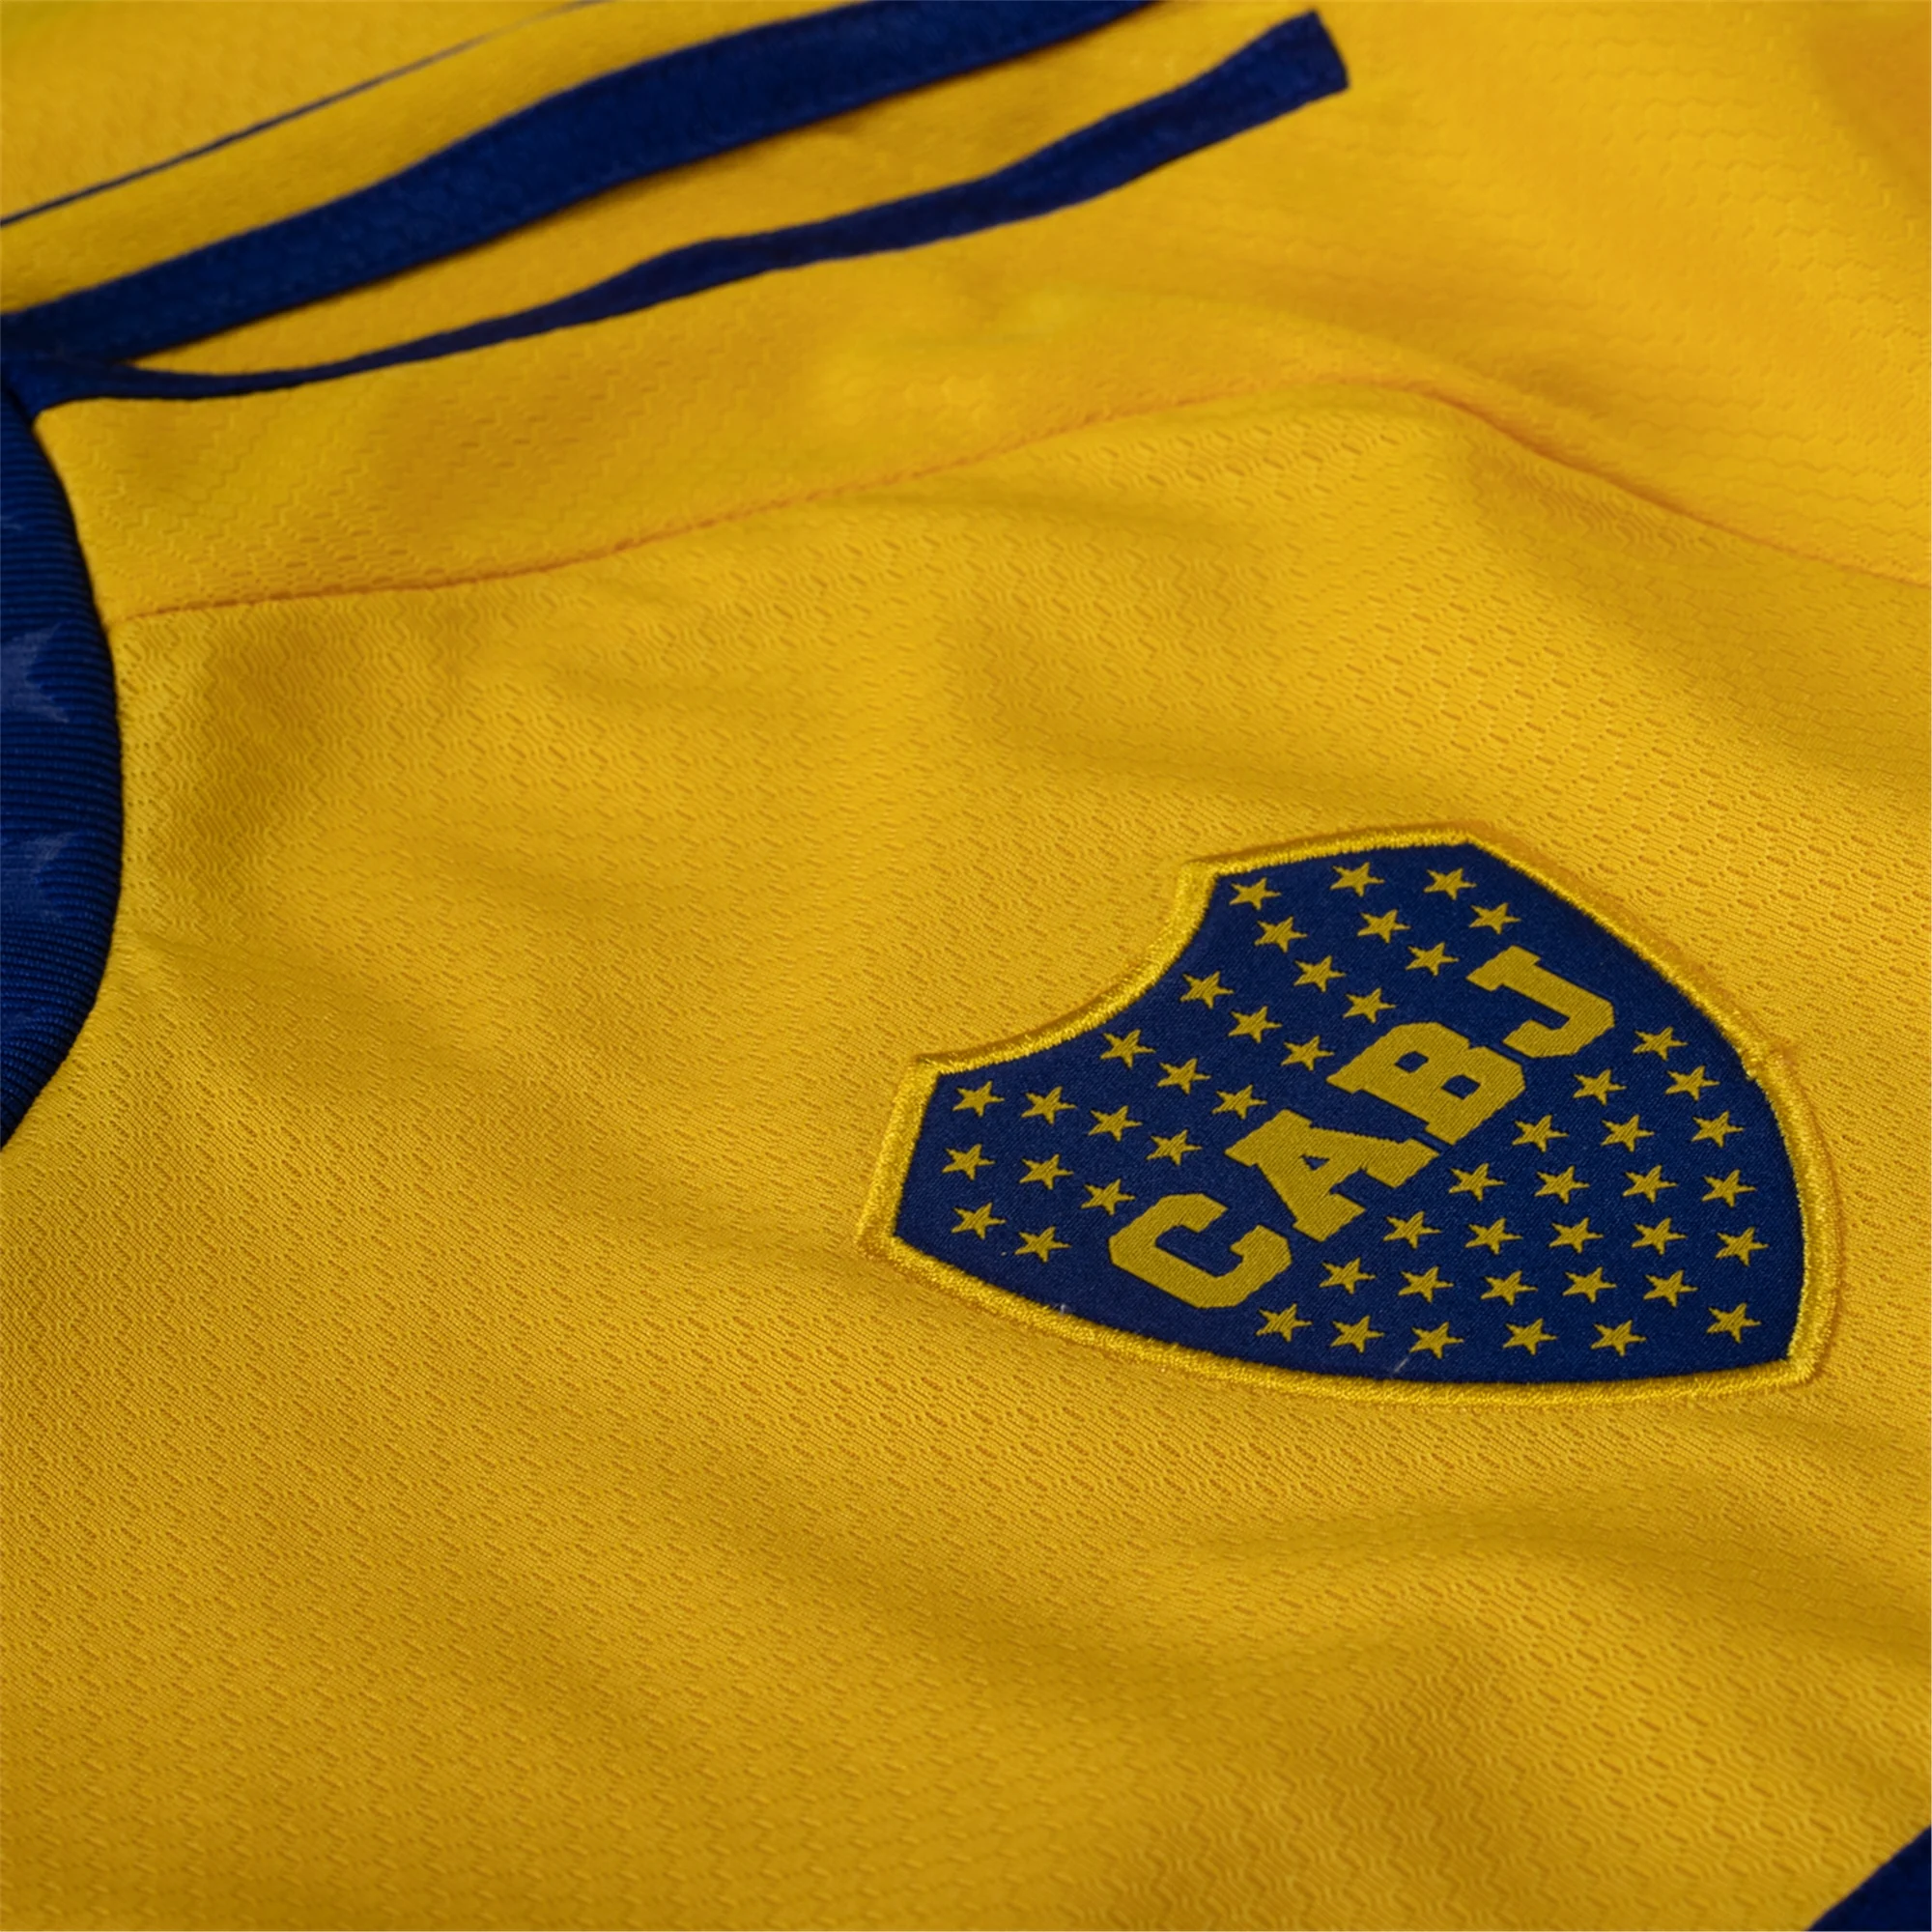 Adidas Boca Juniors Away Jersey 23 Yellow / M